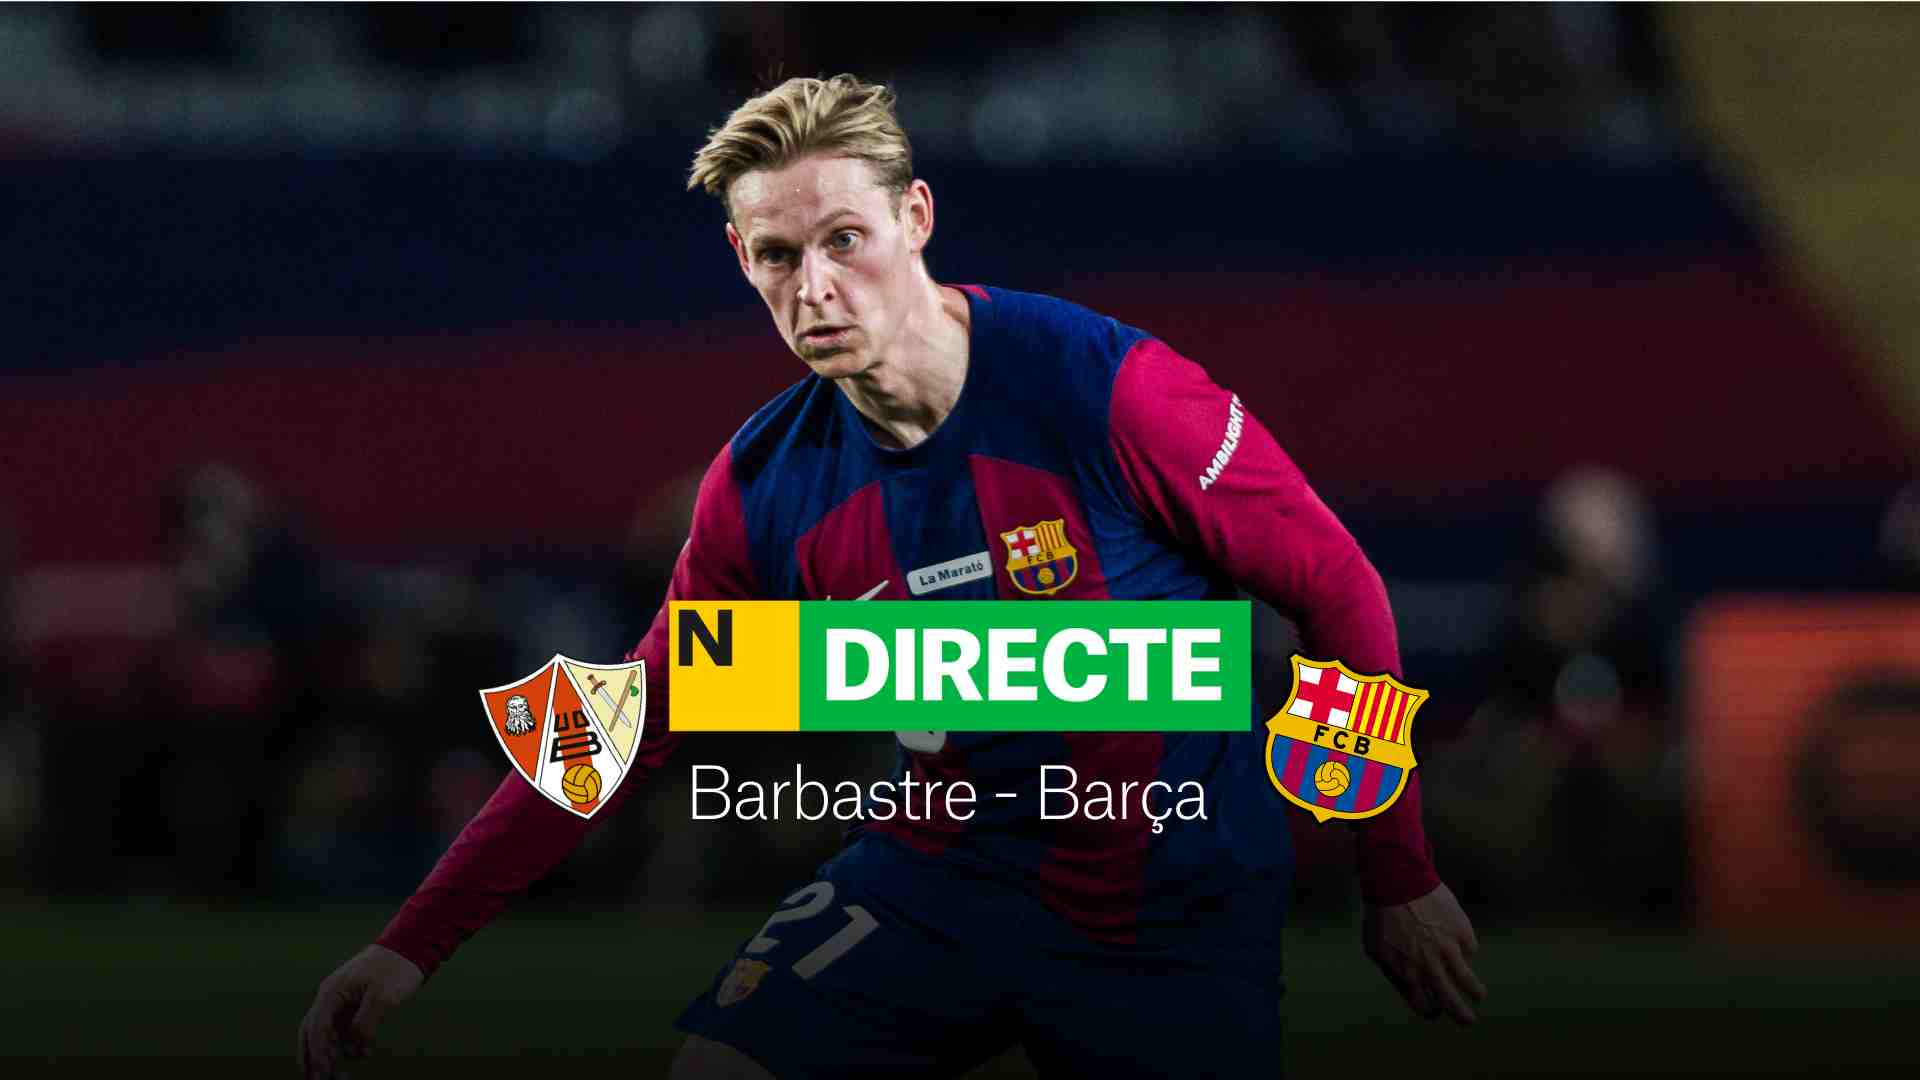 Barbastre - Barça de Copa del Rei avui, DIRECTE | Resultat, resum i gols